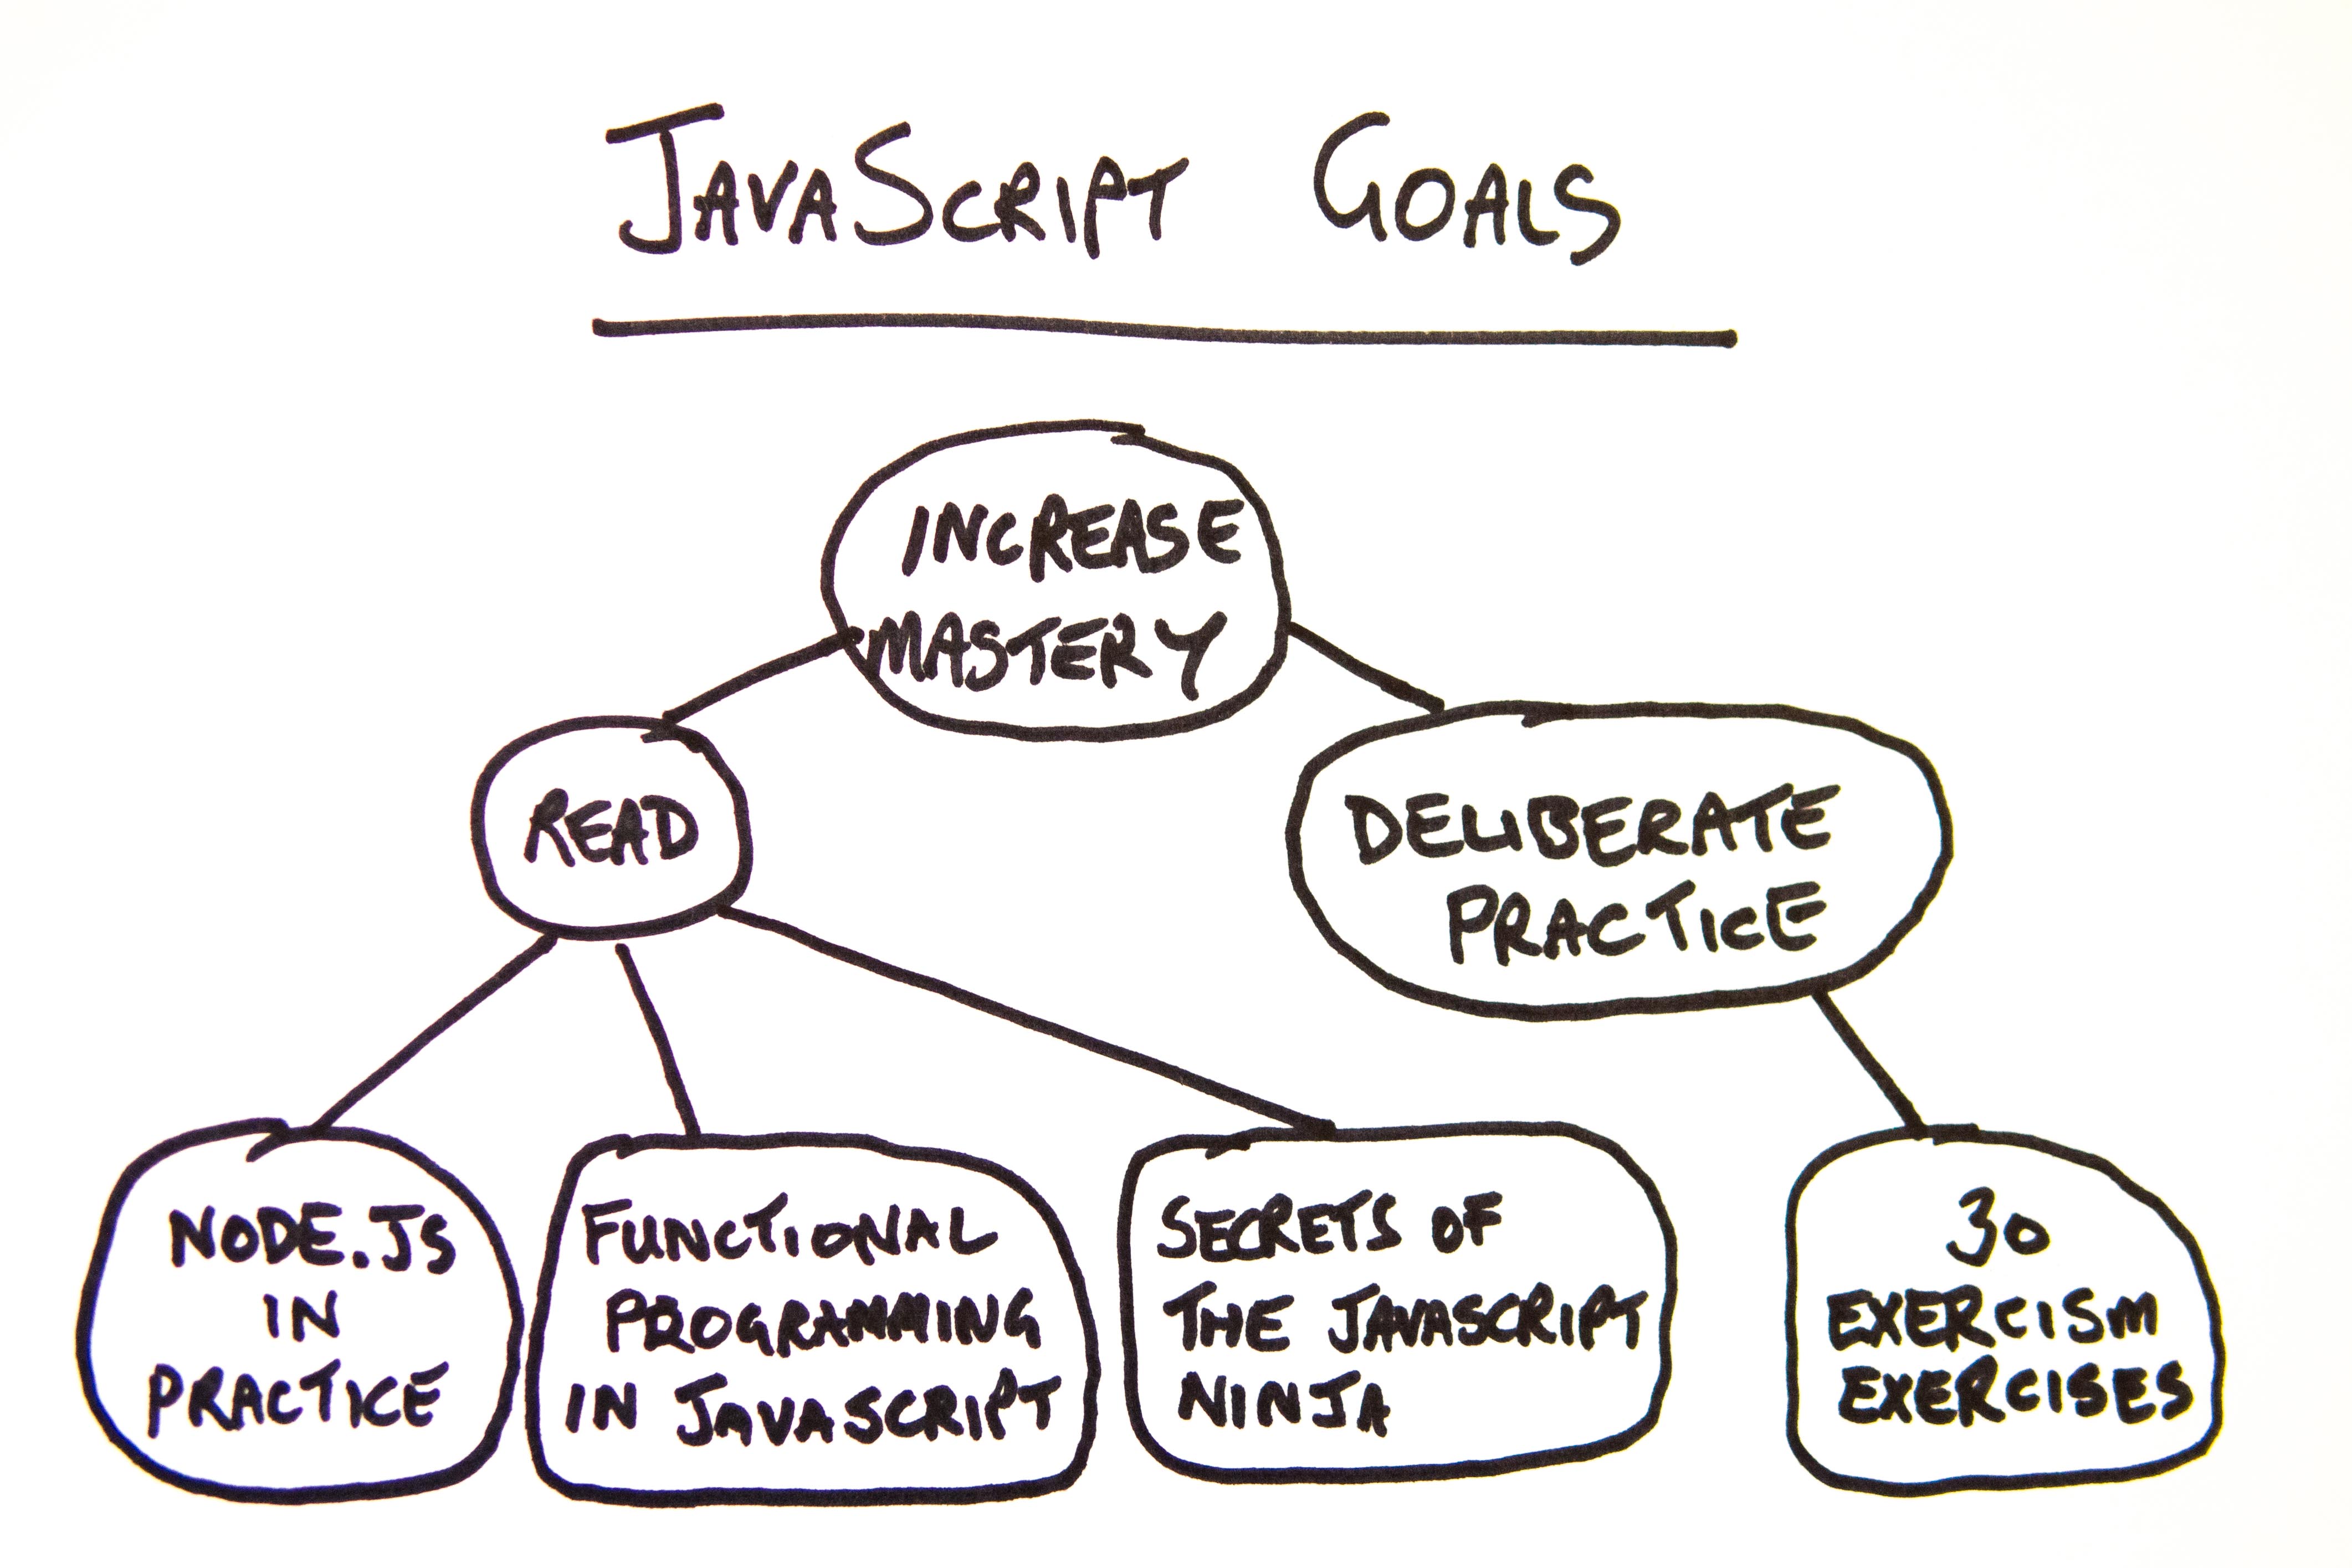 JavaScript goals